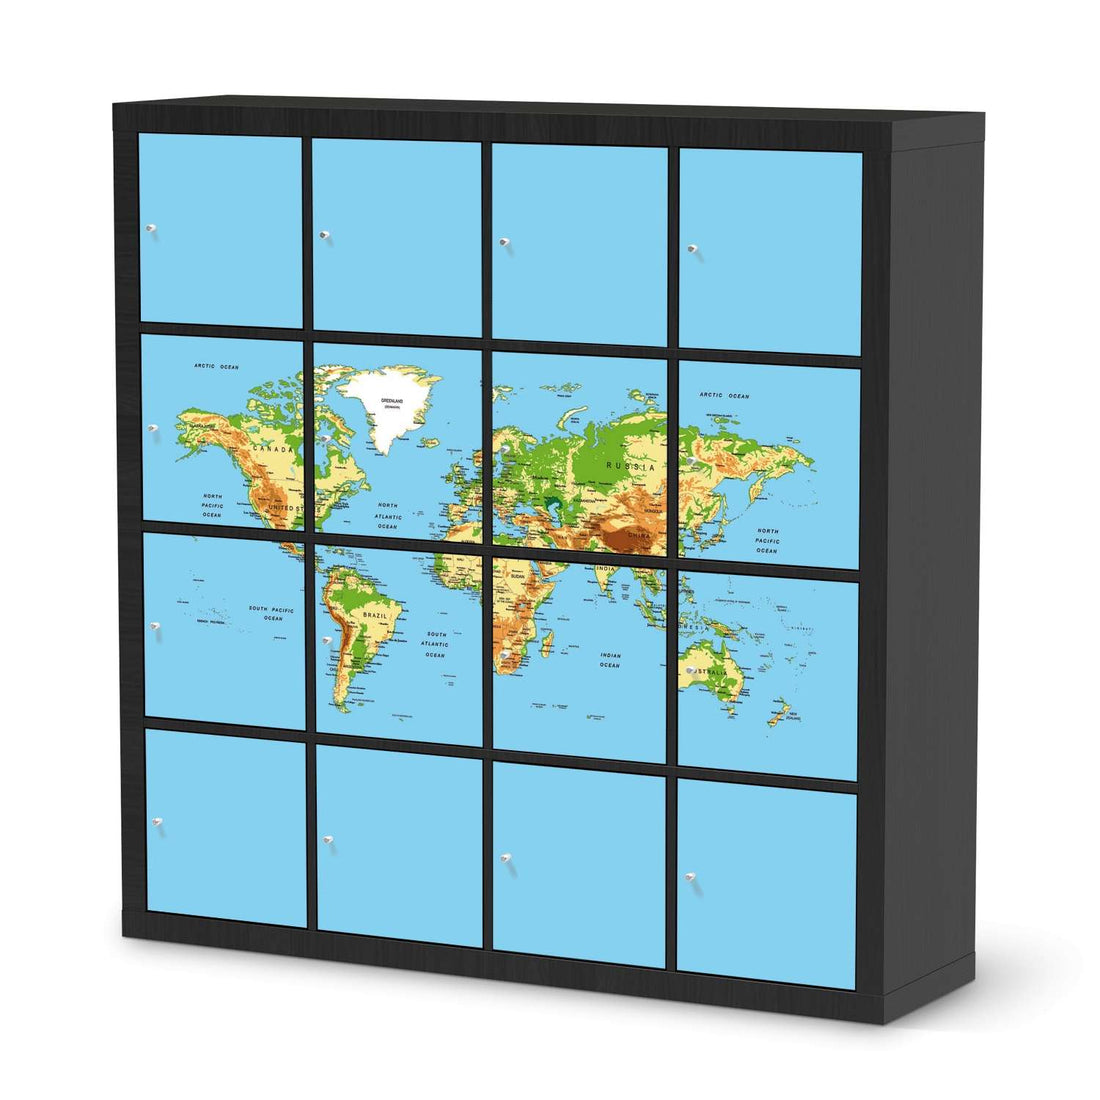 Selbstklebende Folie Geografische Weltkarte - IKEA Expedit Regal 16 Türen - schwarz